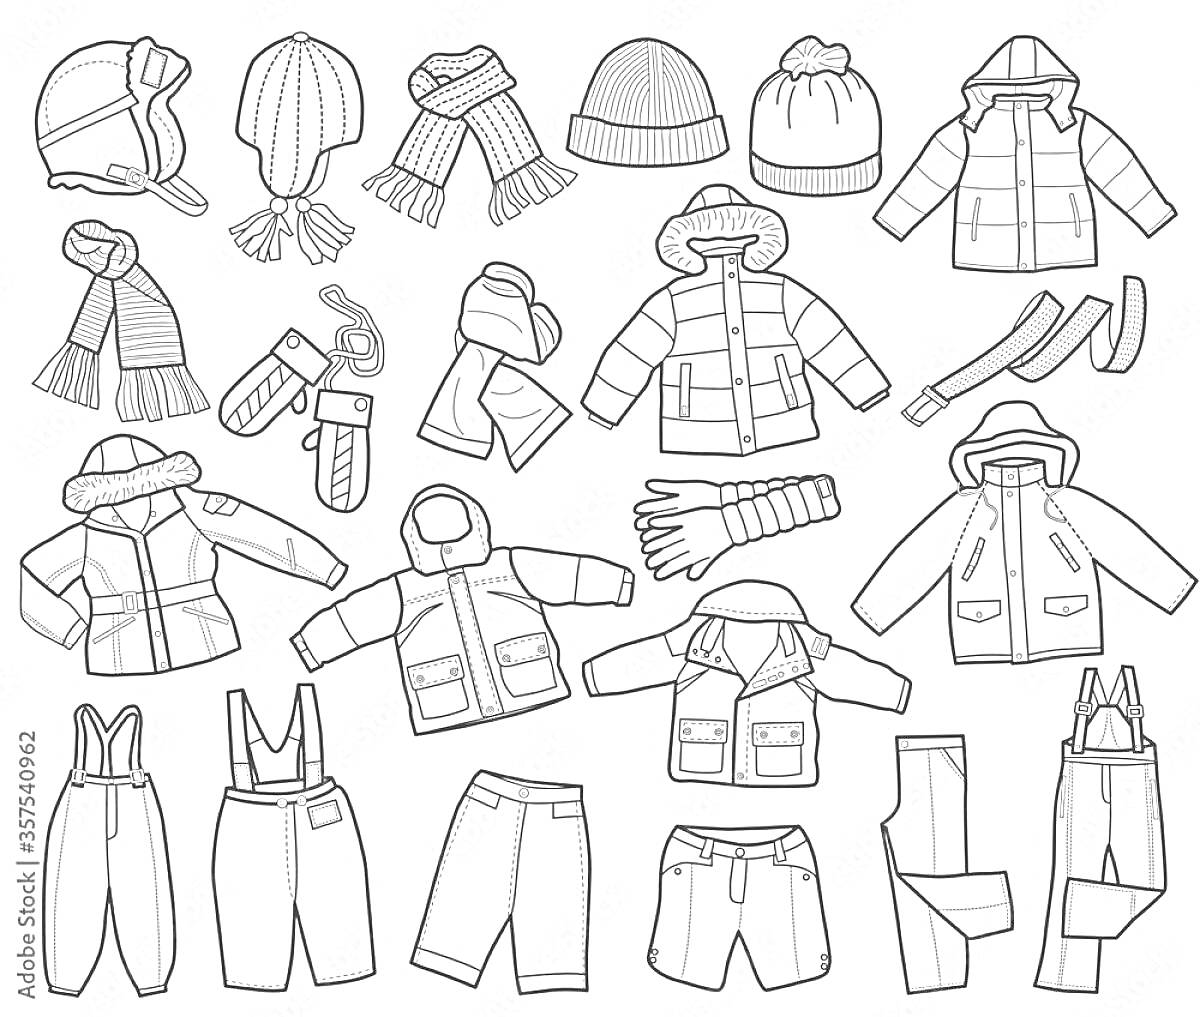 Раскраска Детская зимняя одежда для детского сада: шапка, шарф, перчатки, варежки, куртка, штаны, зимний костюм